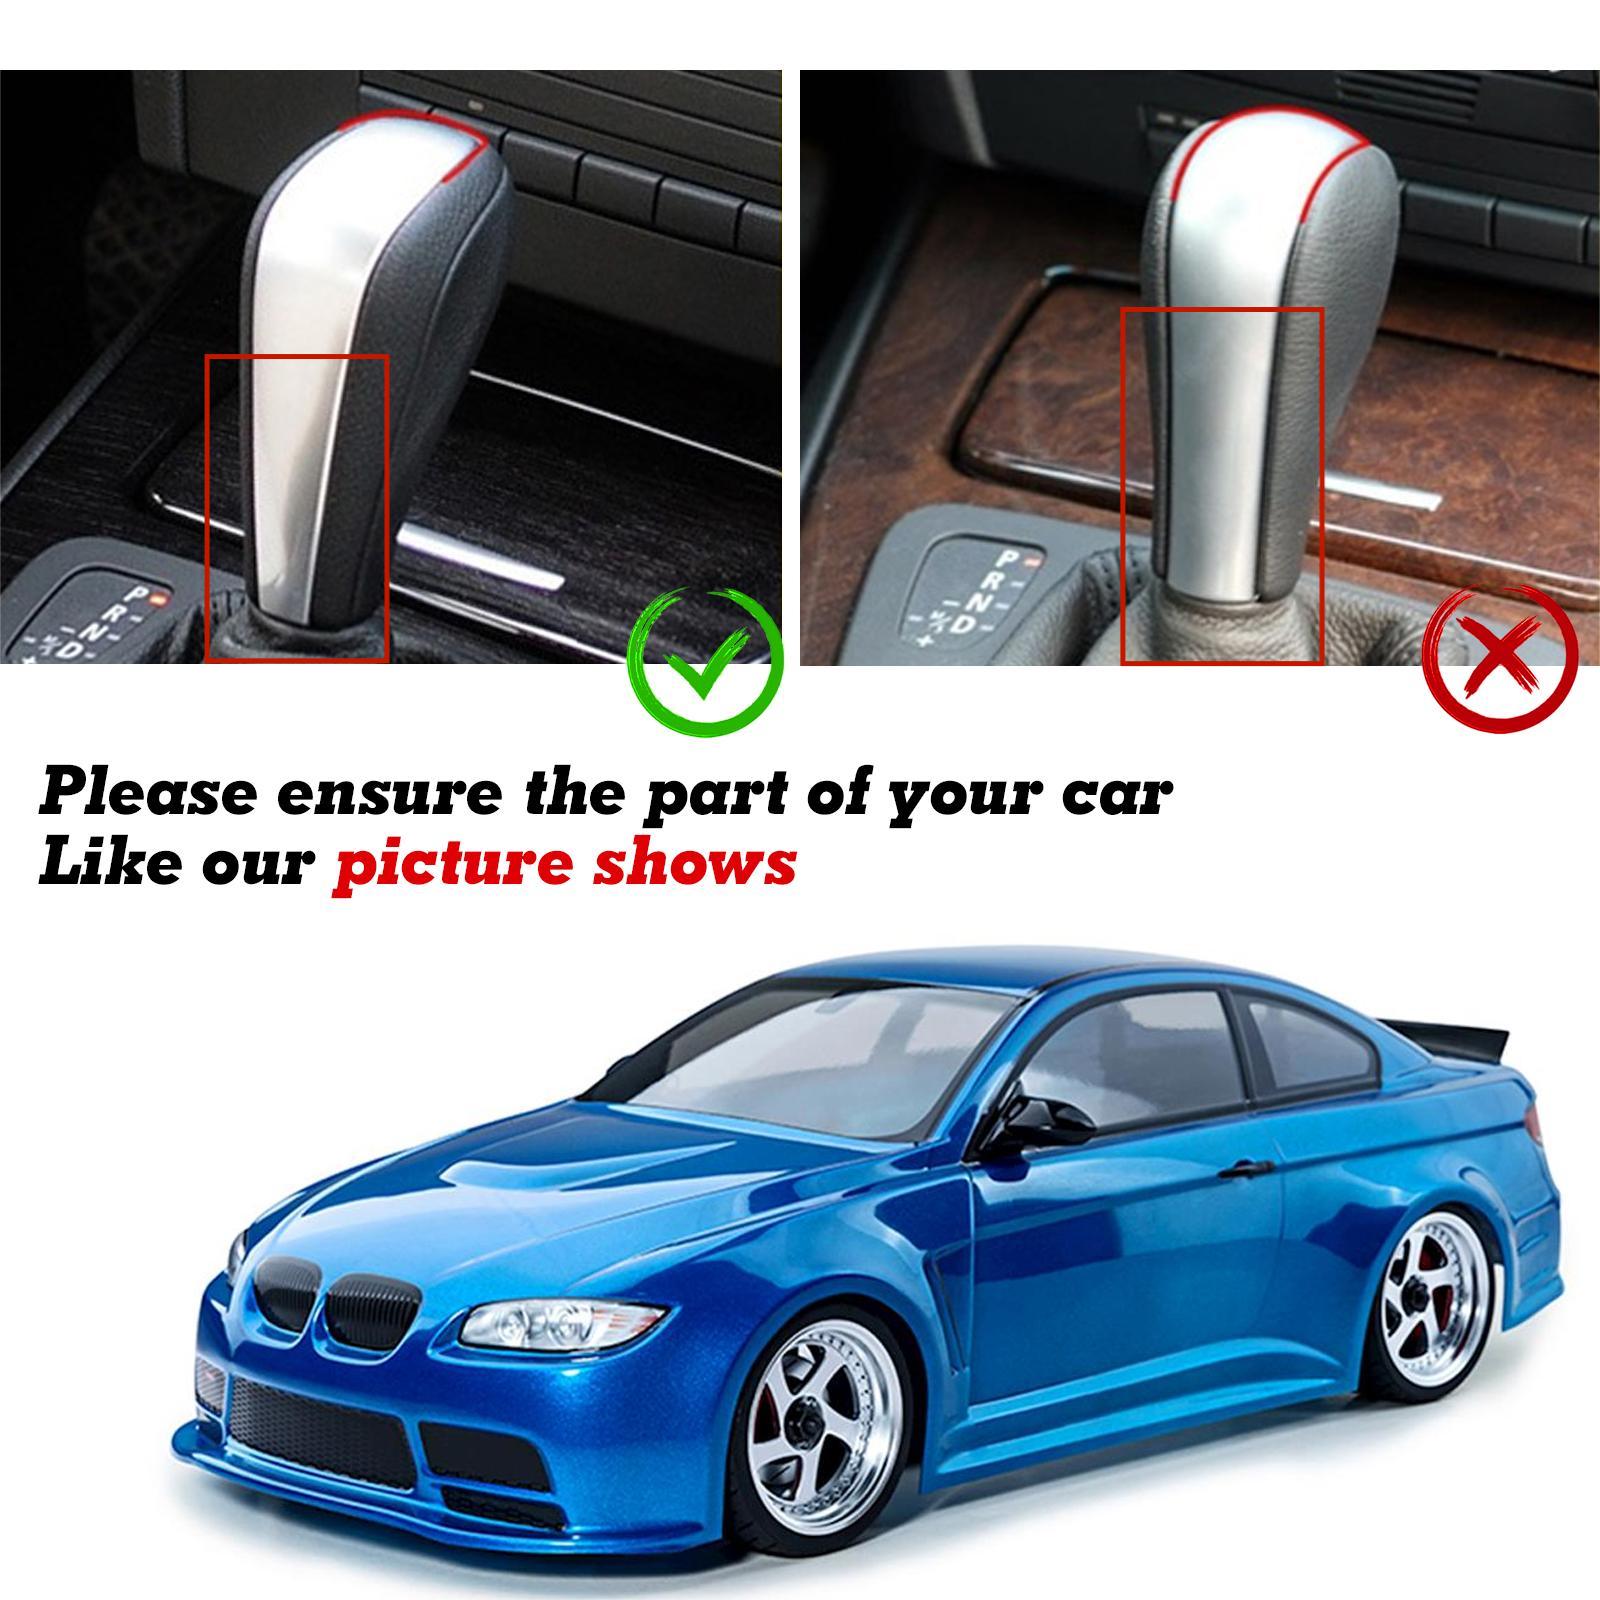 Pinalloy Carbon Fiber Shift Knob Control Panel for BMW E90/E92/E93 3 S